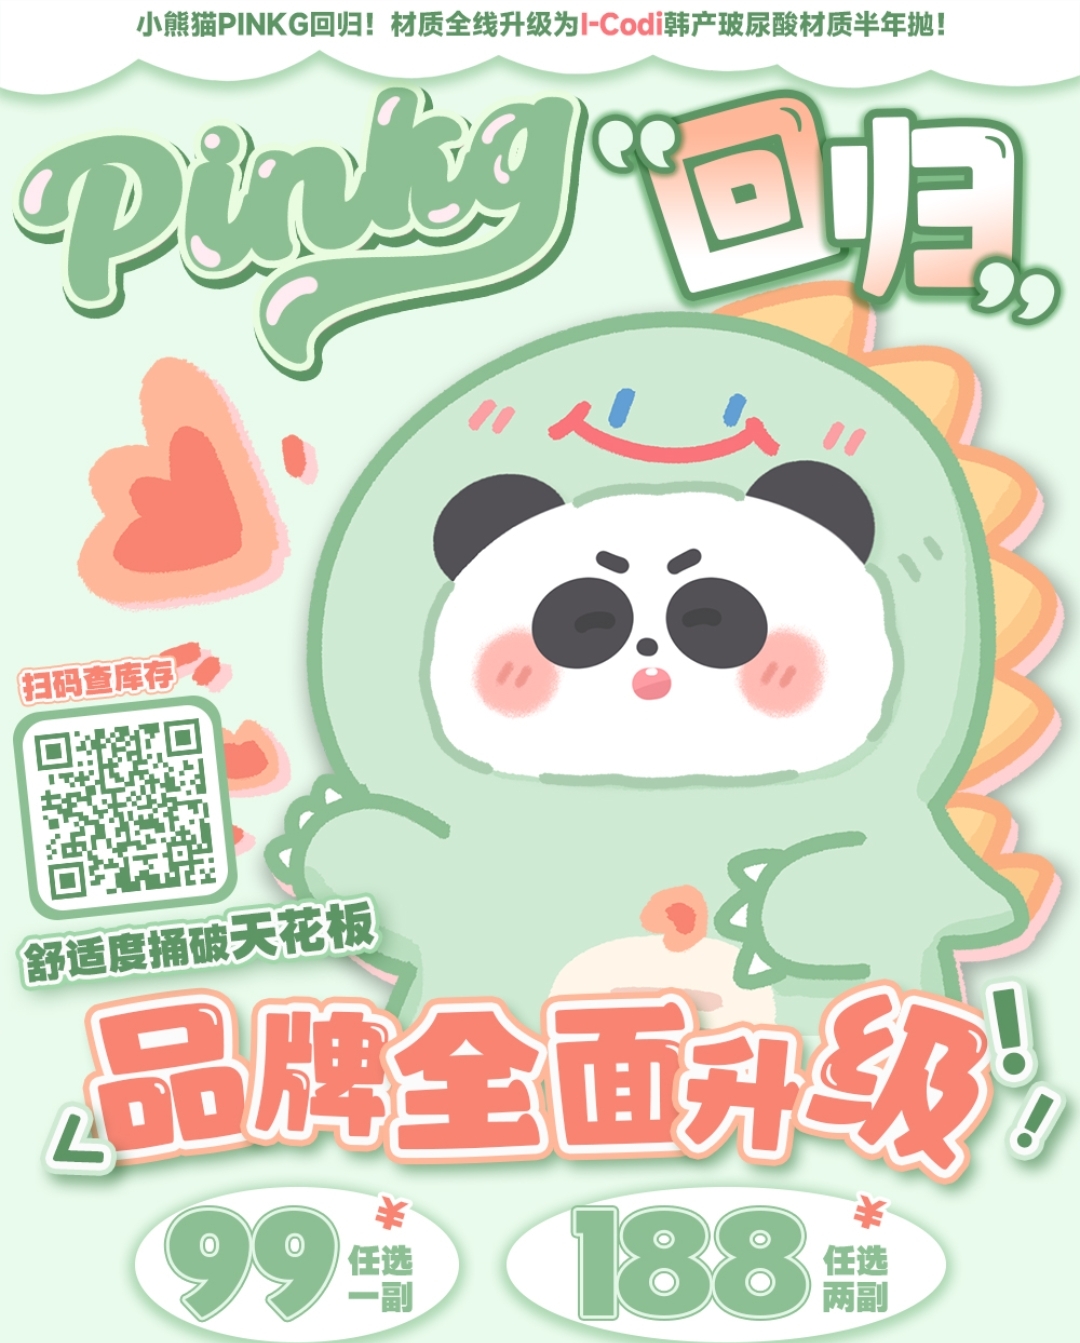 【半年抛】PINKG美瞳 小熊猫回归 品牌全面升级